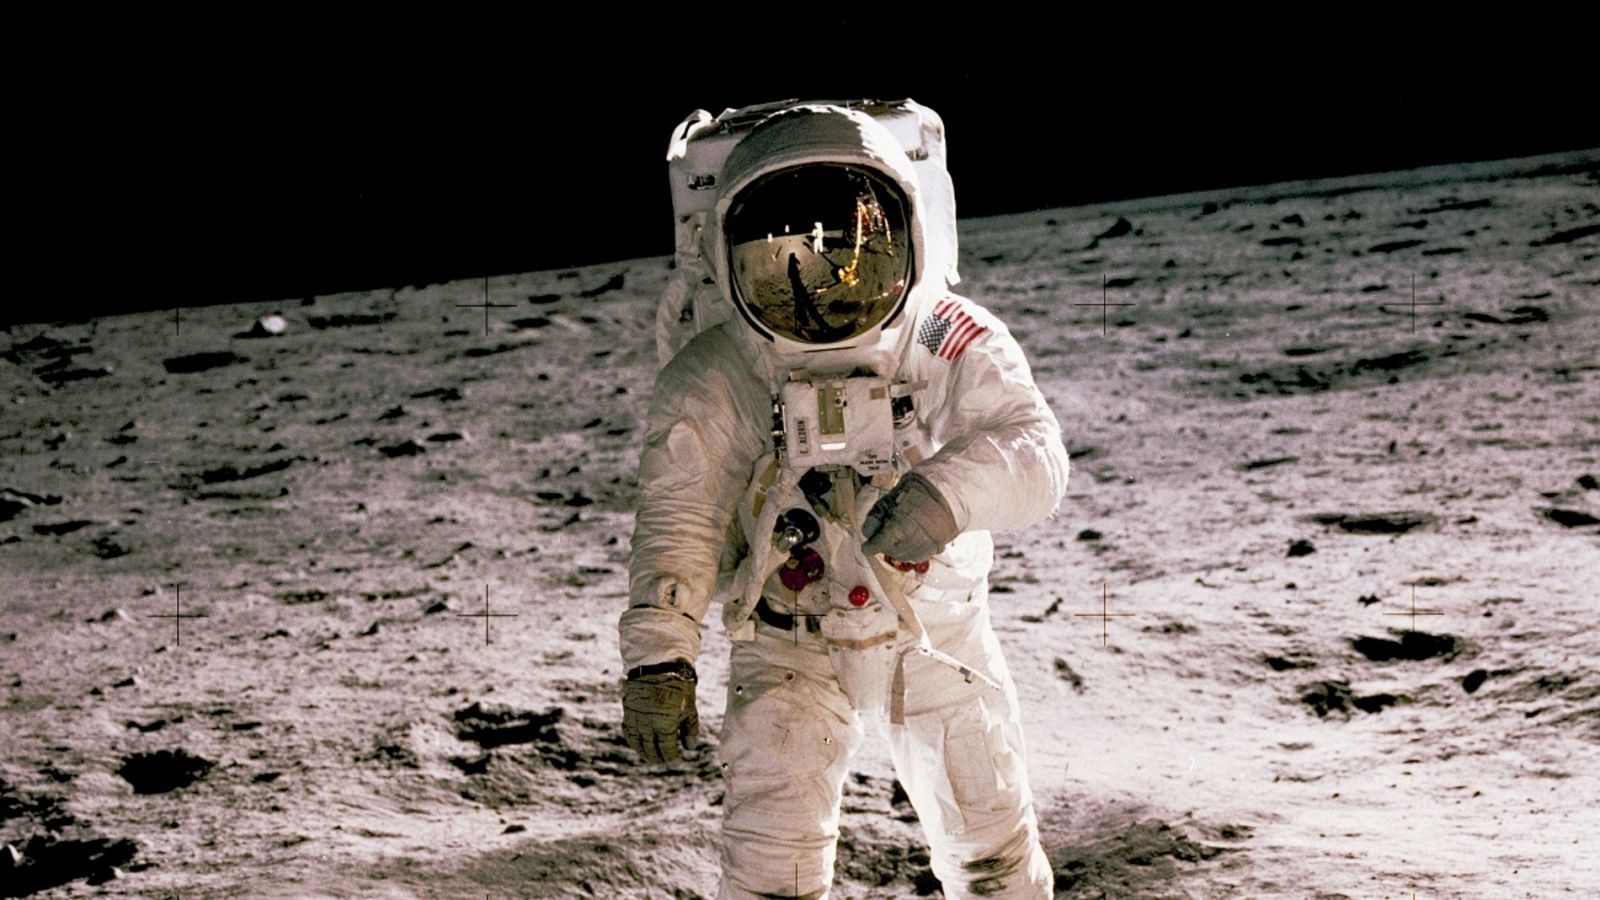 Enviar el hombre a la Luna fue una de las primeras metas de la Administración Nacional de la Aeronáutica y del Espacio (NASA) de EE.UU. al iniciar sus operaciones un lejano 1 de octubre de 1958, hace 60 años, un periodo en el que la agencia ha amplia